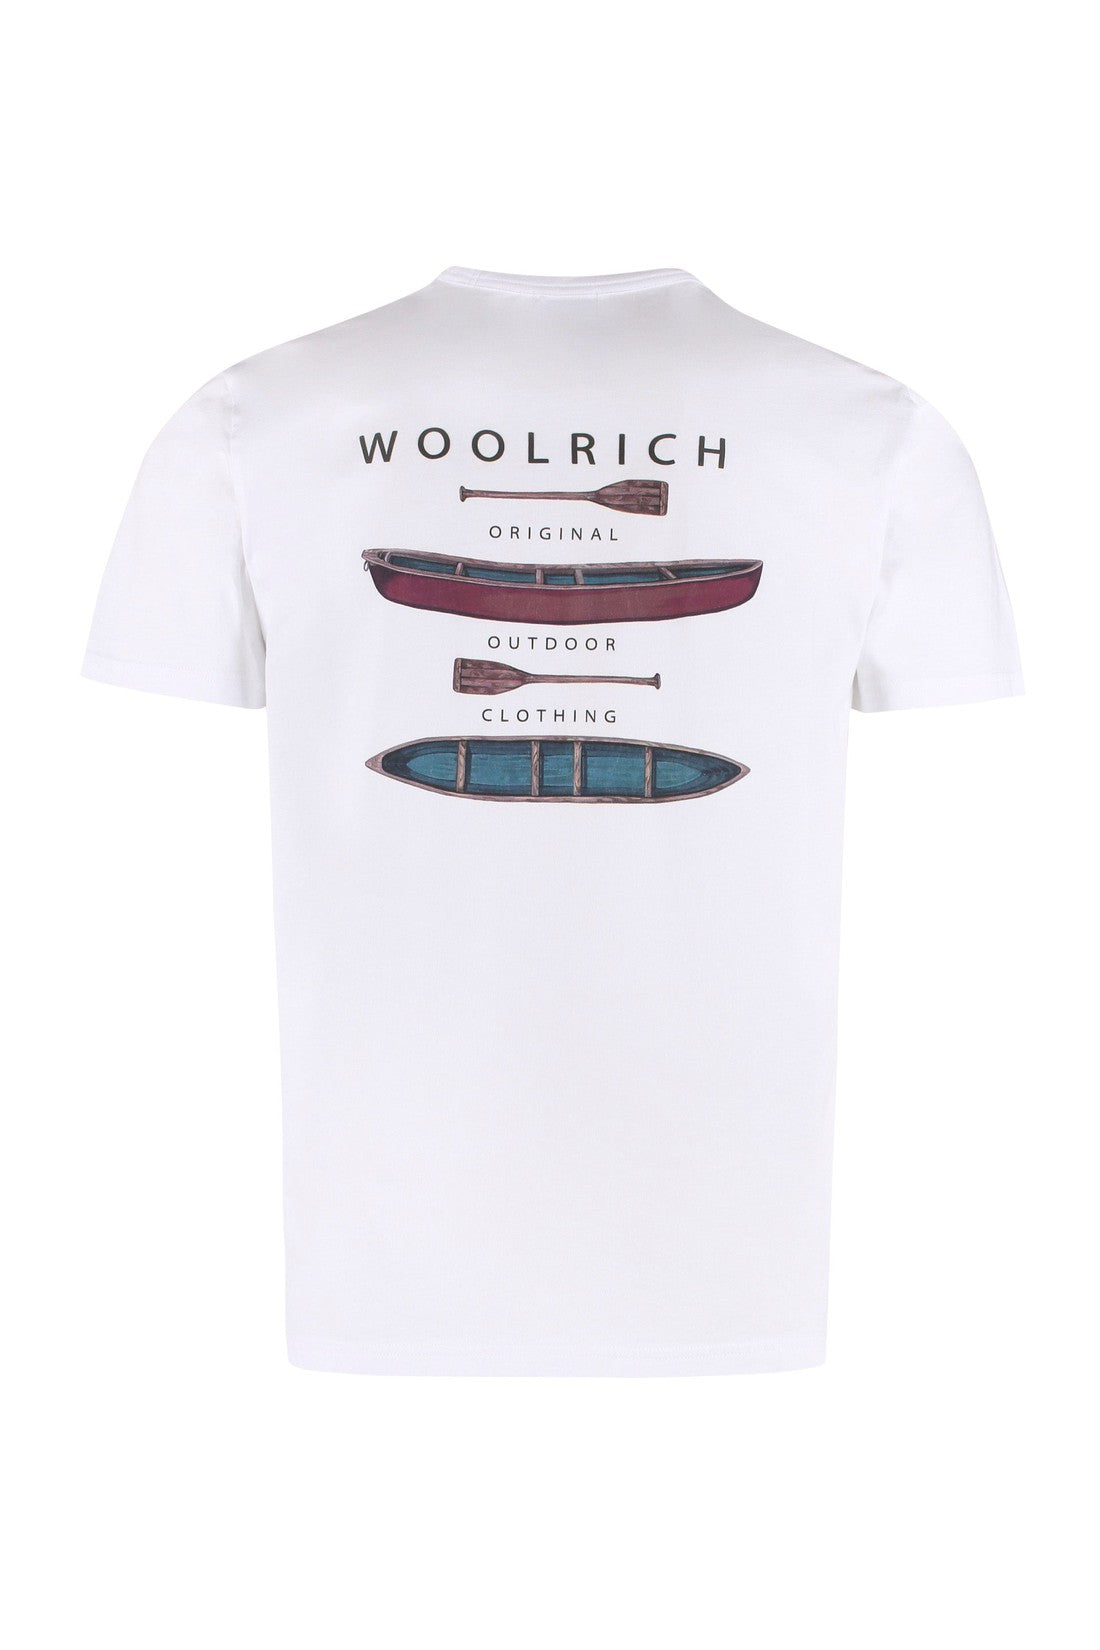 Woolrich-OUTLET-SALE-Lakeside cotton crew-neck T-shirt-ARCHIVIST